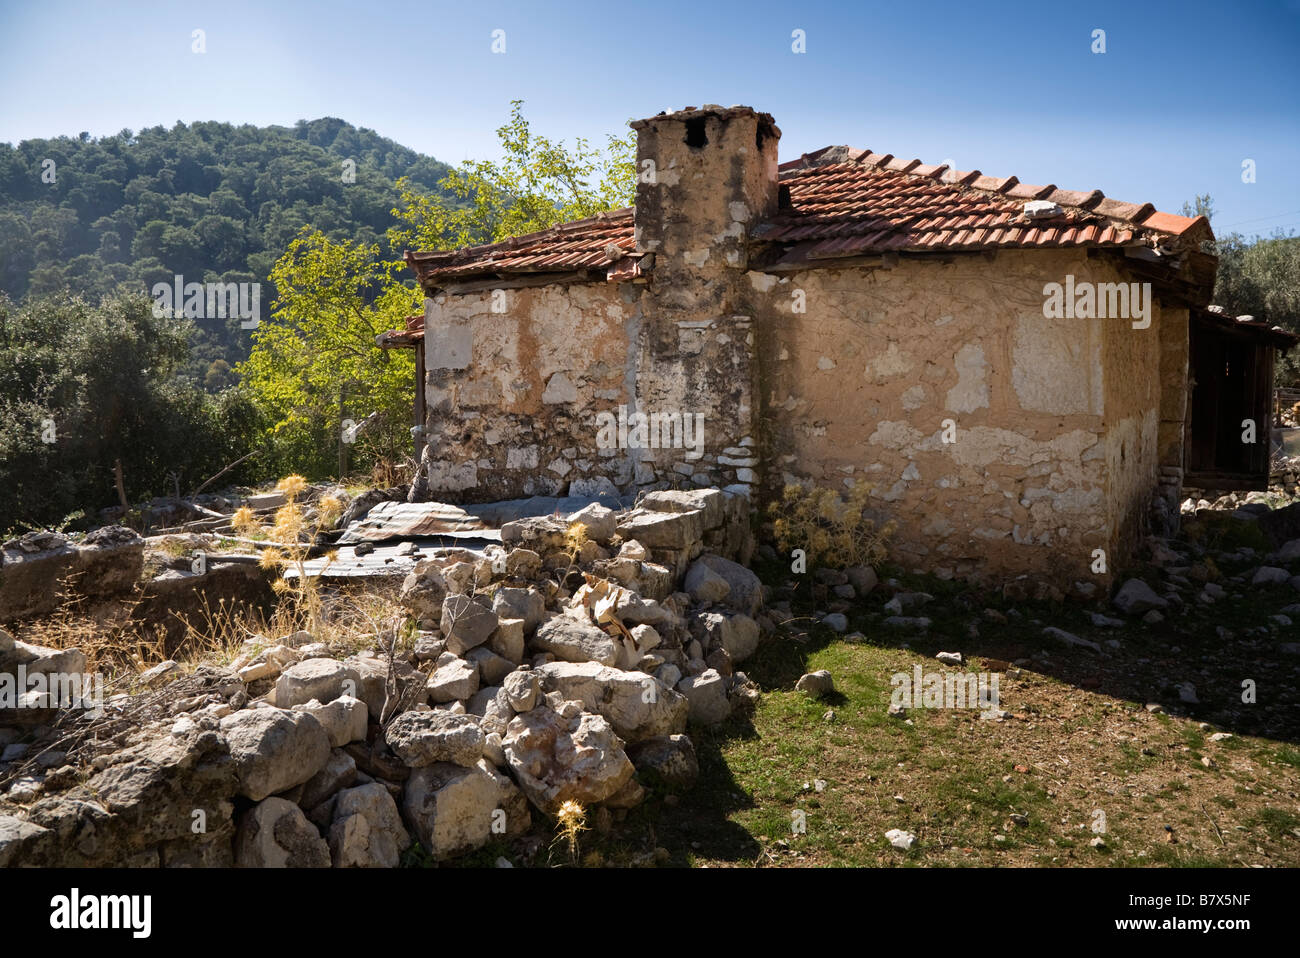 Une vue arrière d'une maison construite en pierre turc avec un toit en tuiles de terre cuite en villageTurkey Sidyma Banque D'Images